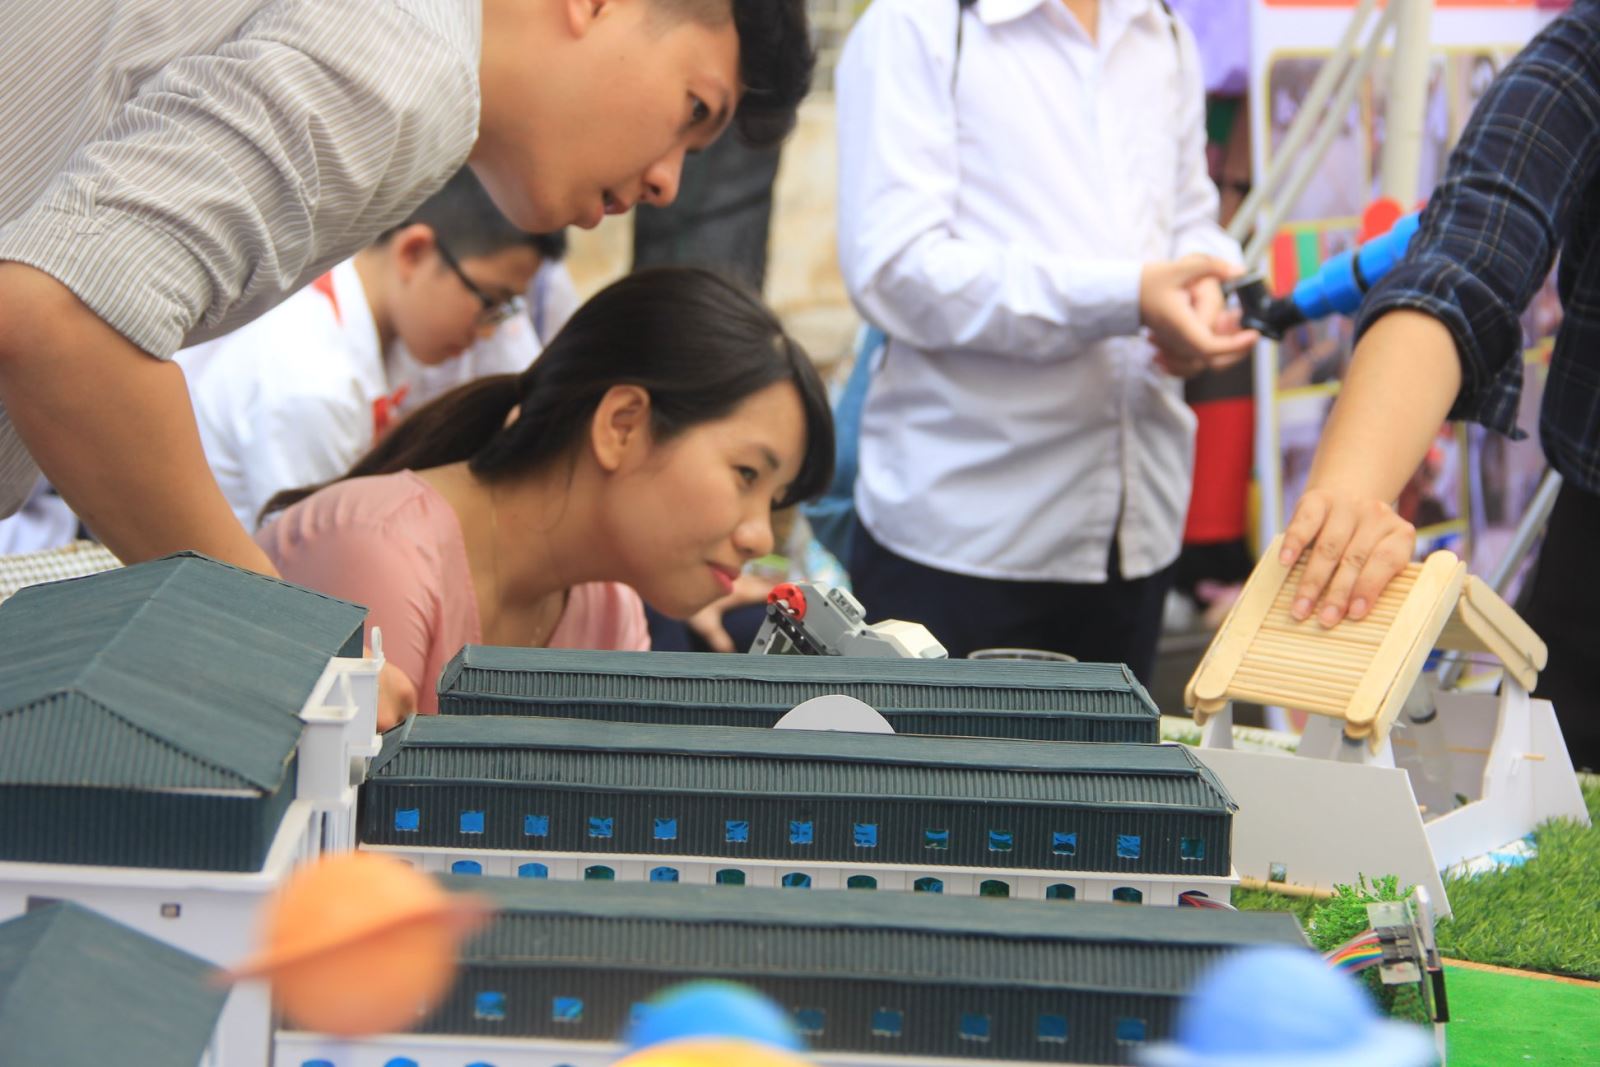 “Chạm” o o o o - ngày hội lớn của STEM Việt Nam 2018